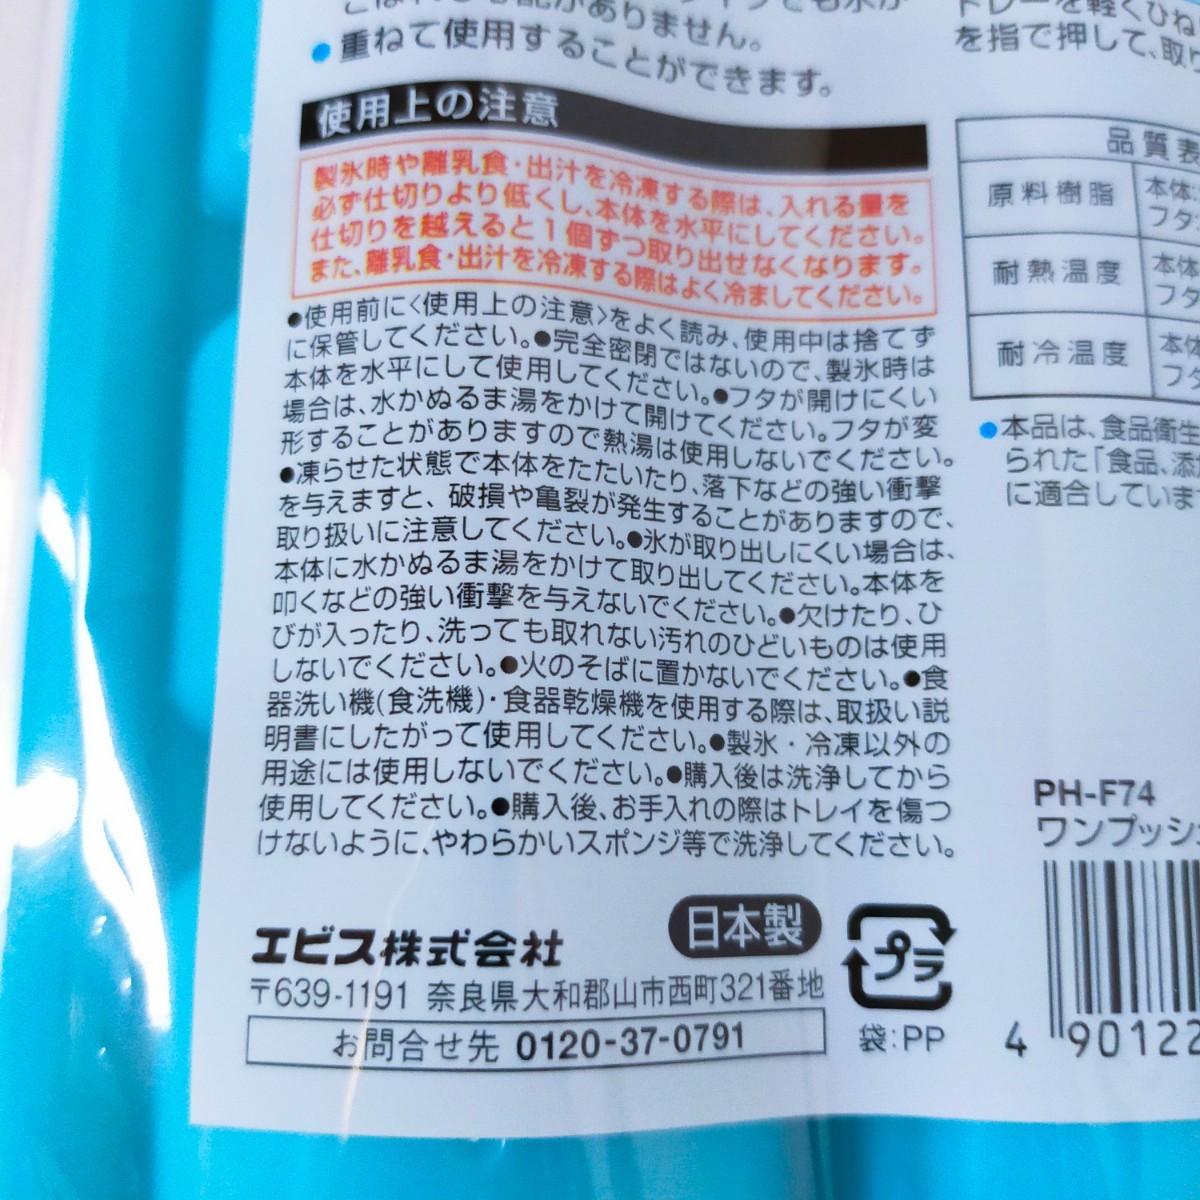 0* не использовался товар one кнопка лёд tray сделано в Японии 1 шт по брать .... льдогенератор тарелка воздухо-непроницаемый крышка емкость для хранения e винт 10 шт брать . льдогенератор контейнер 